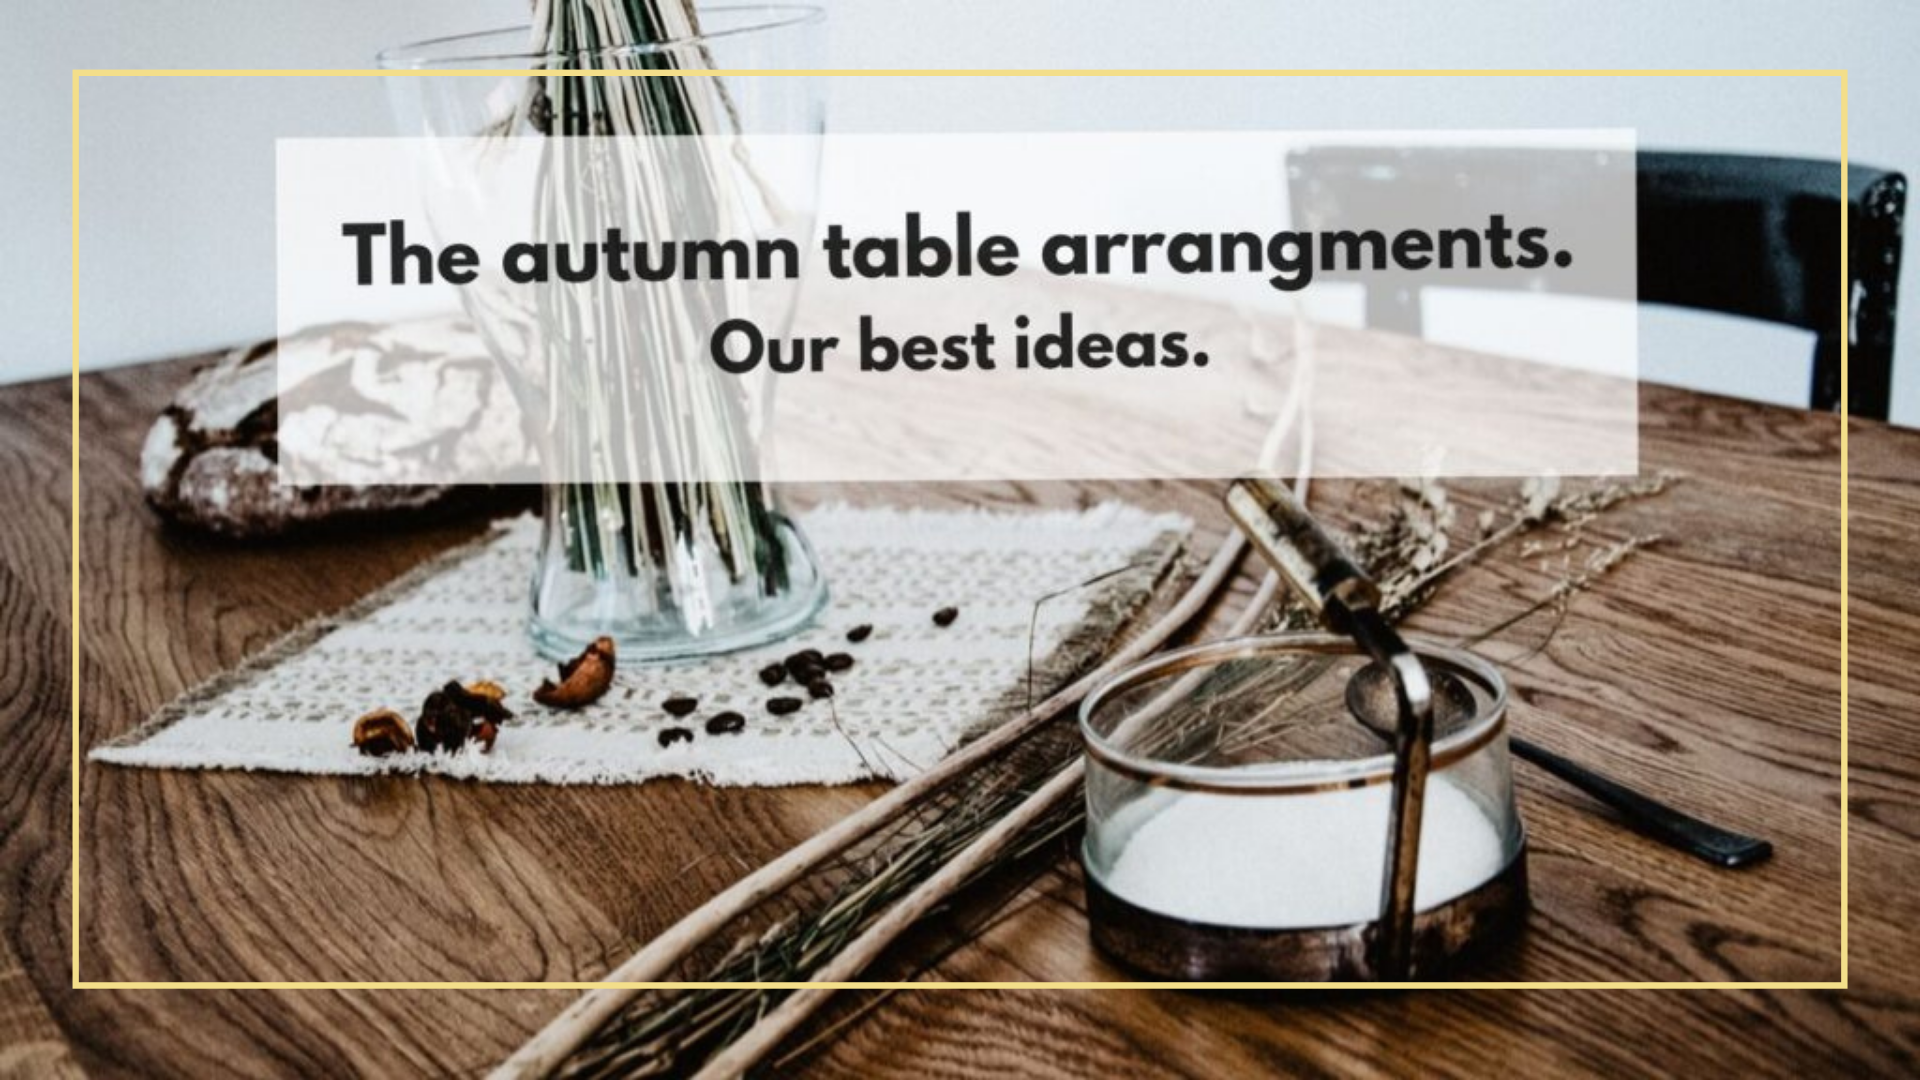 The autumn table arrangements. Our best ideas